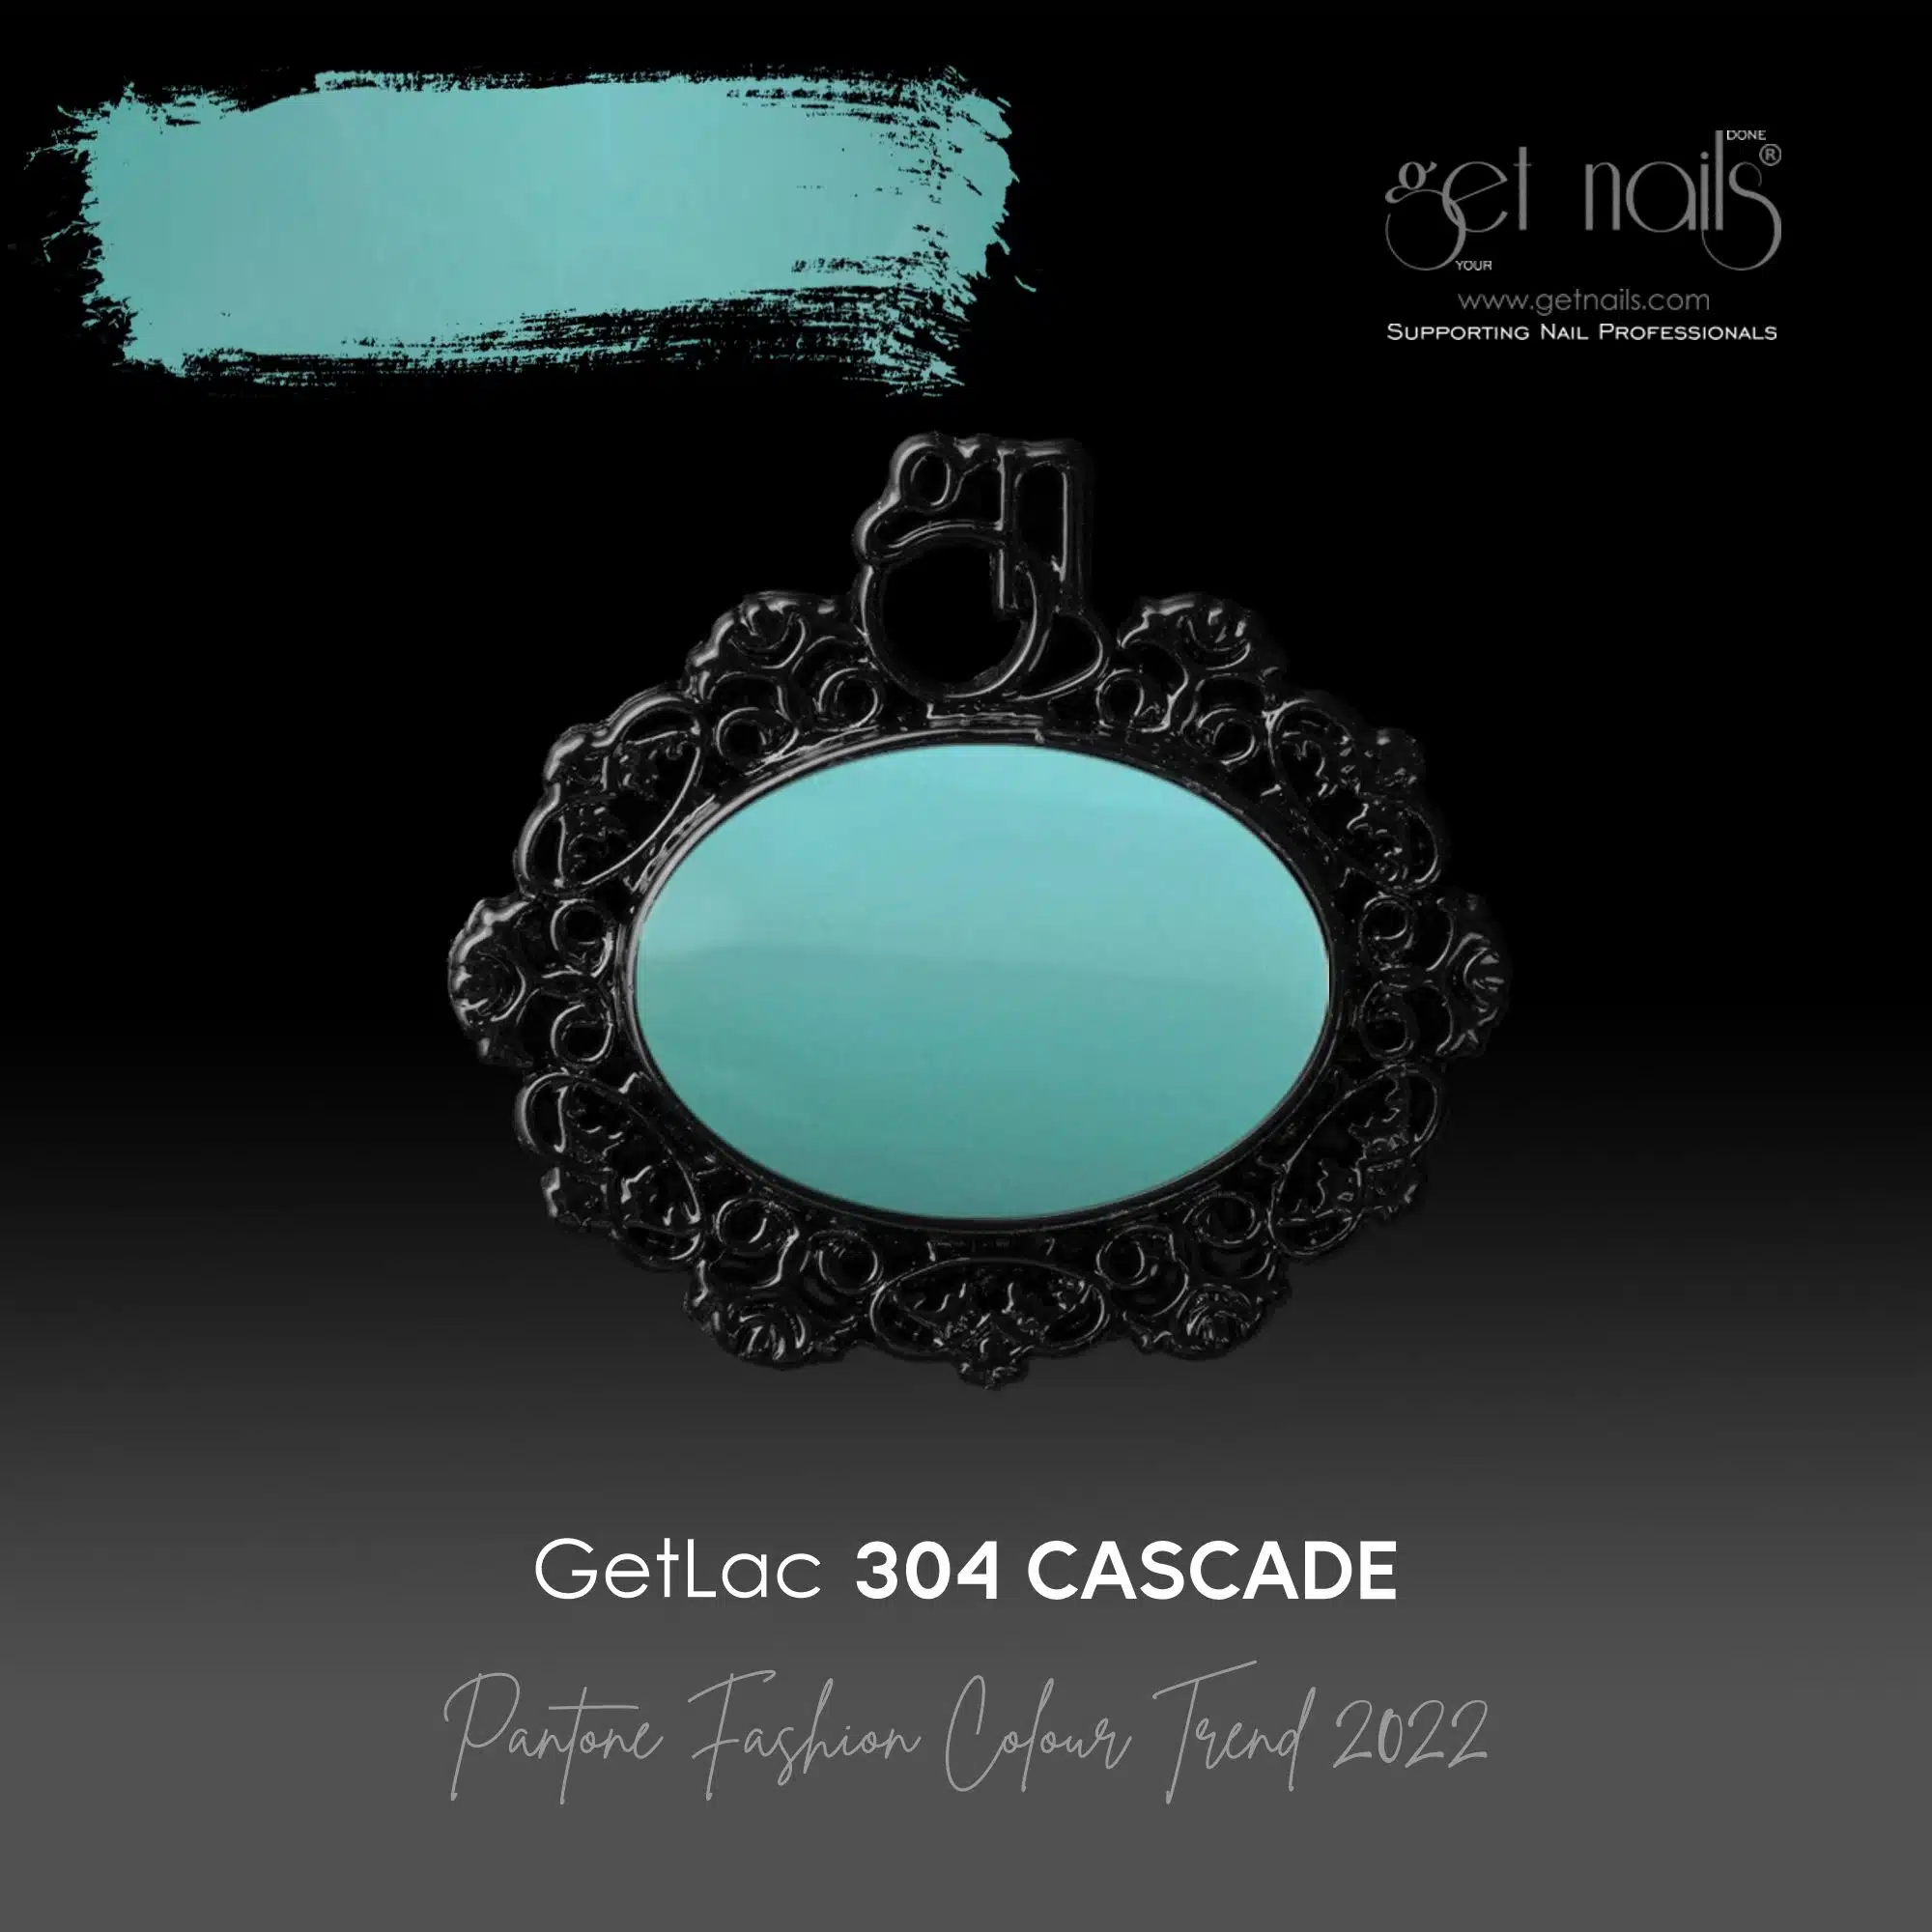 Get Nails Austria - GetLac 304 Cascade 15 g